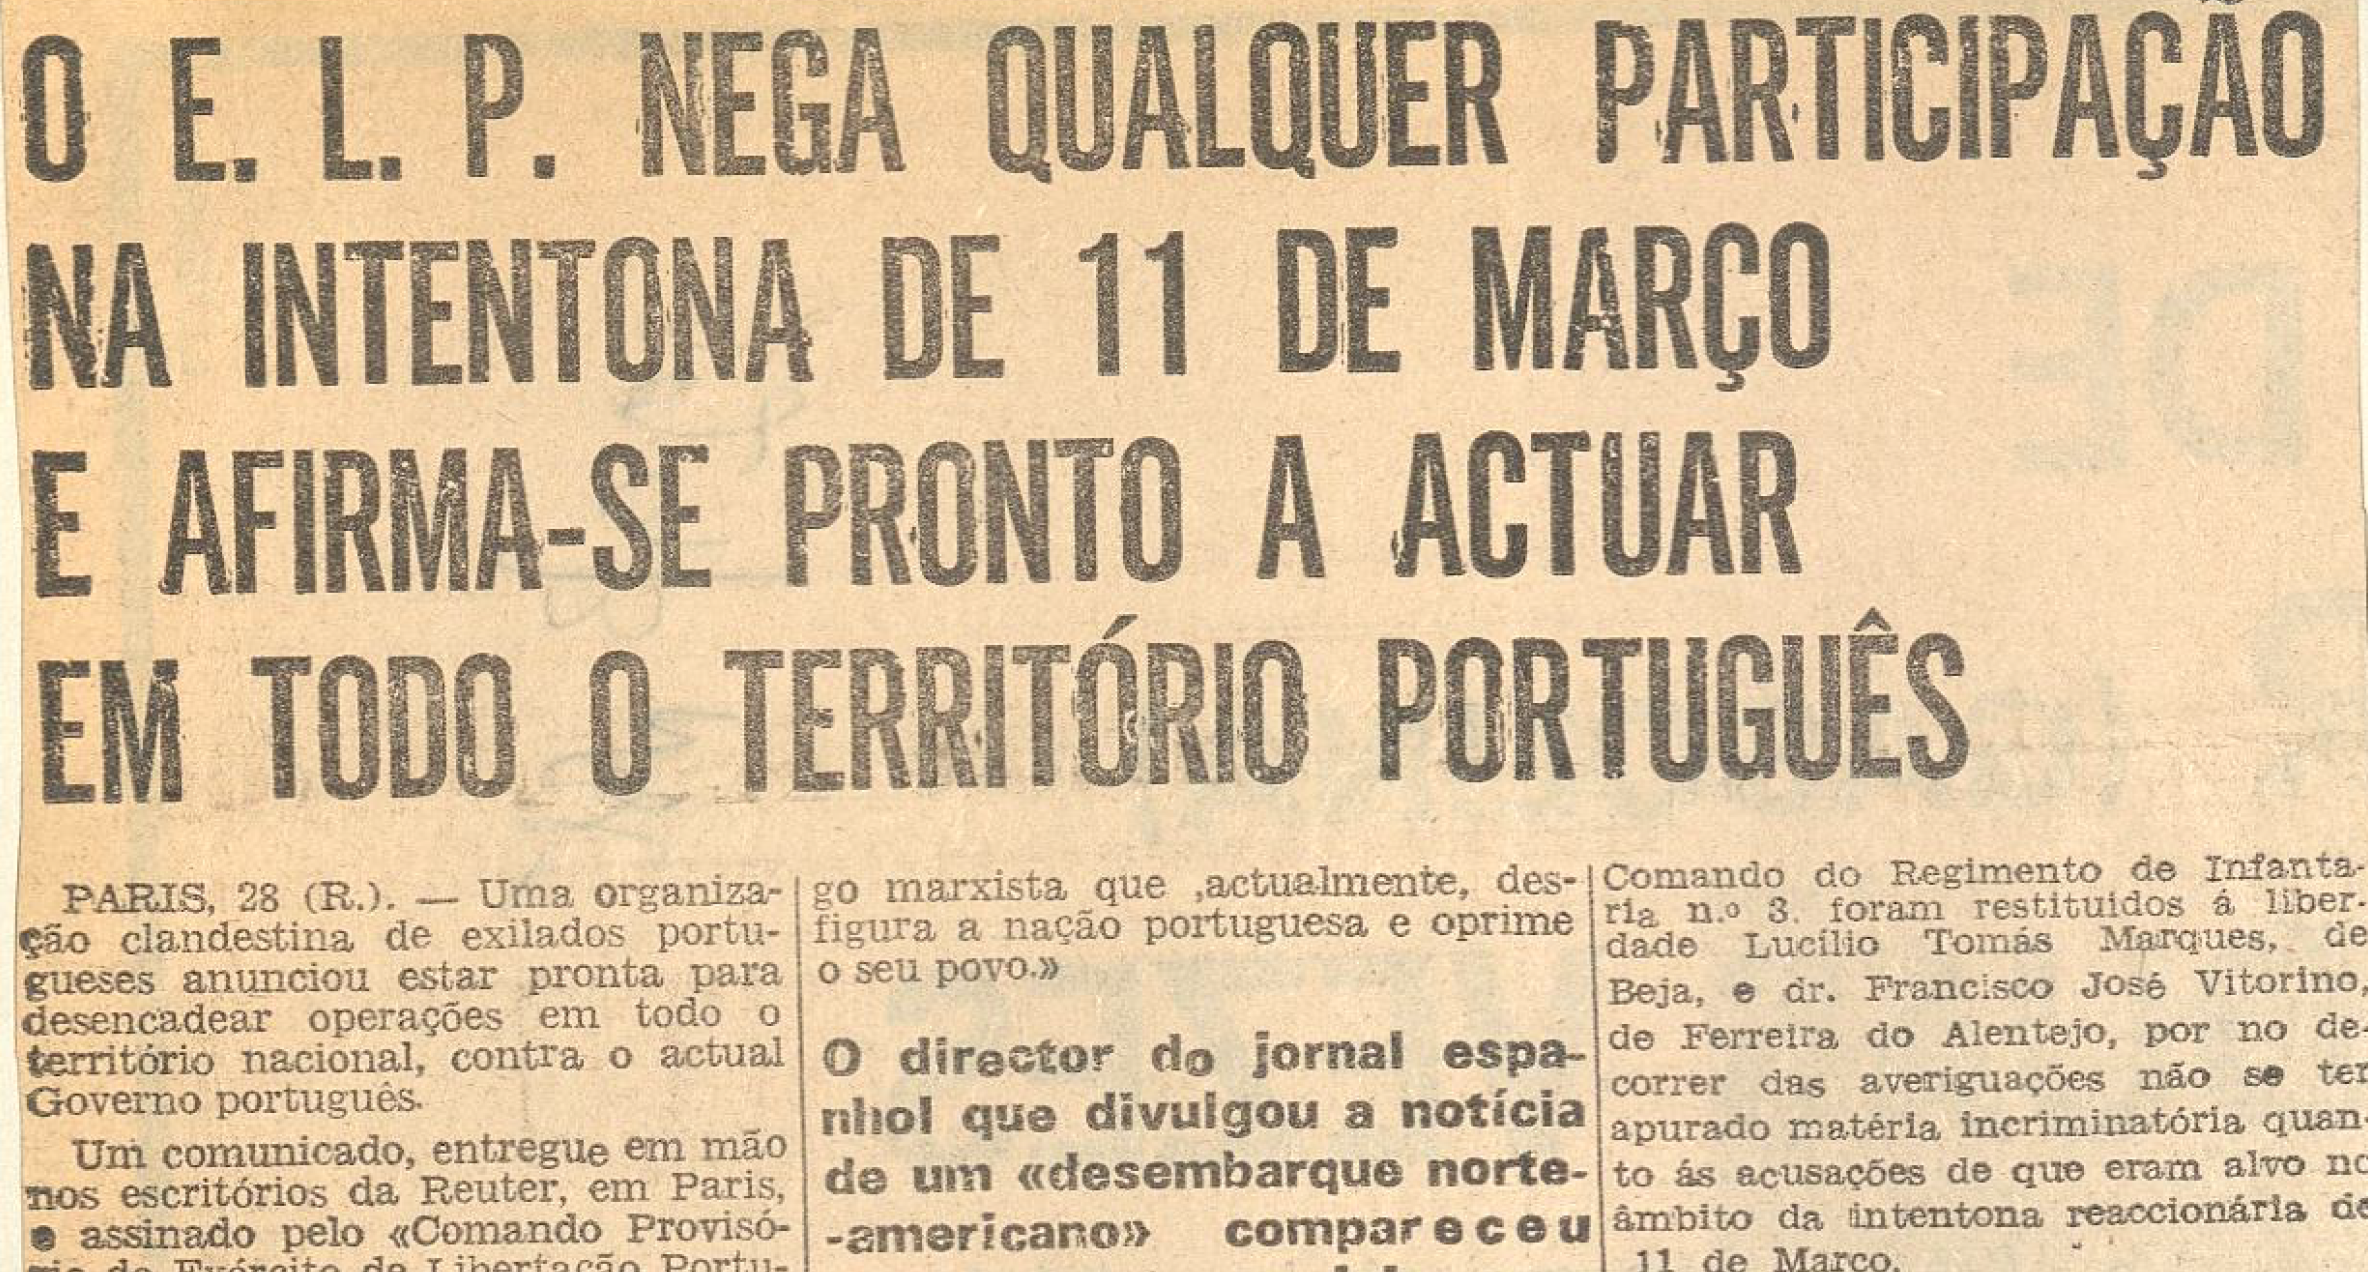 "O ELP nega qualquer participação na intentona de 11 de Março e afirma-se pronto a actuar em todo o territorio portugues"